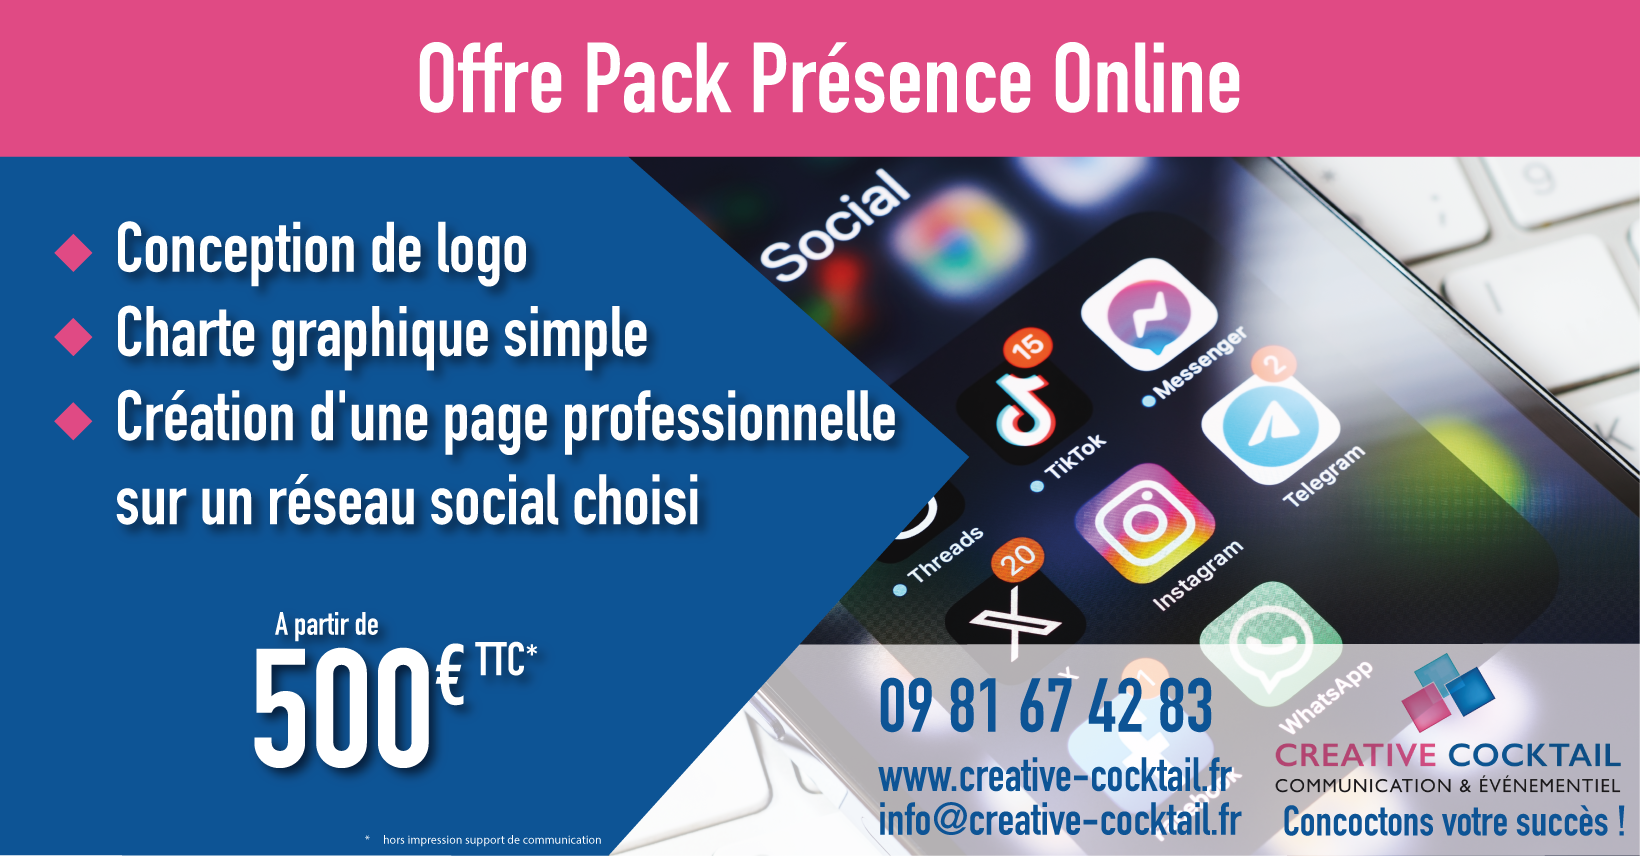 Offre Pack Présence Online